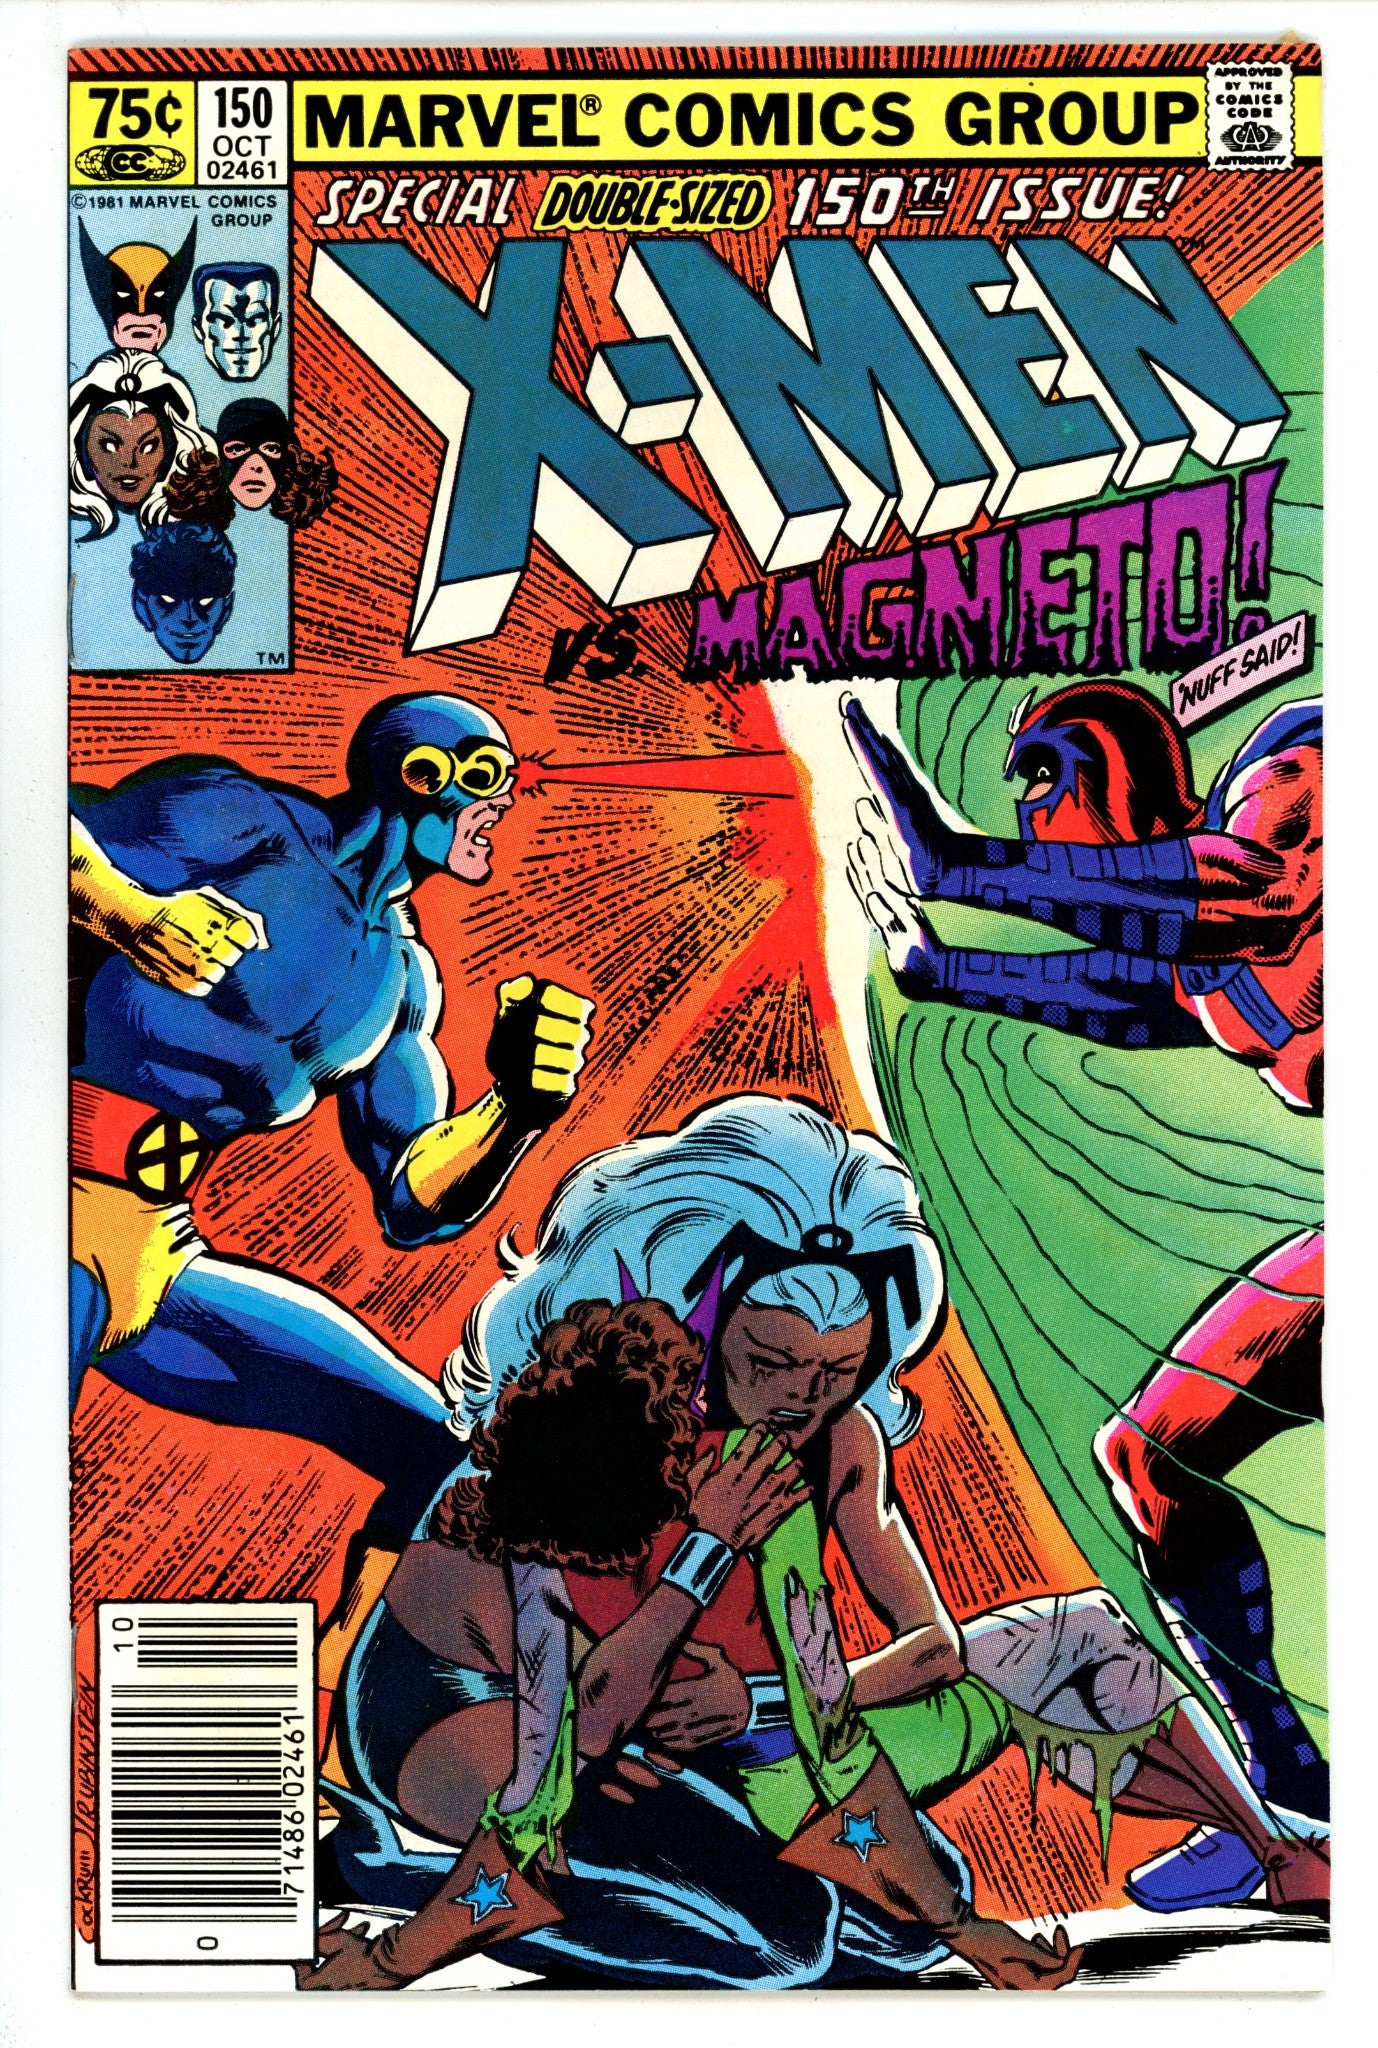 The Uncanny X-Men Vol 1 150 VF (8.0) (1981) Newsstand 